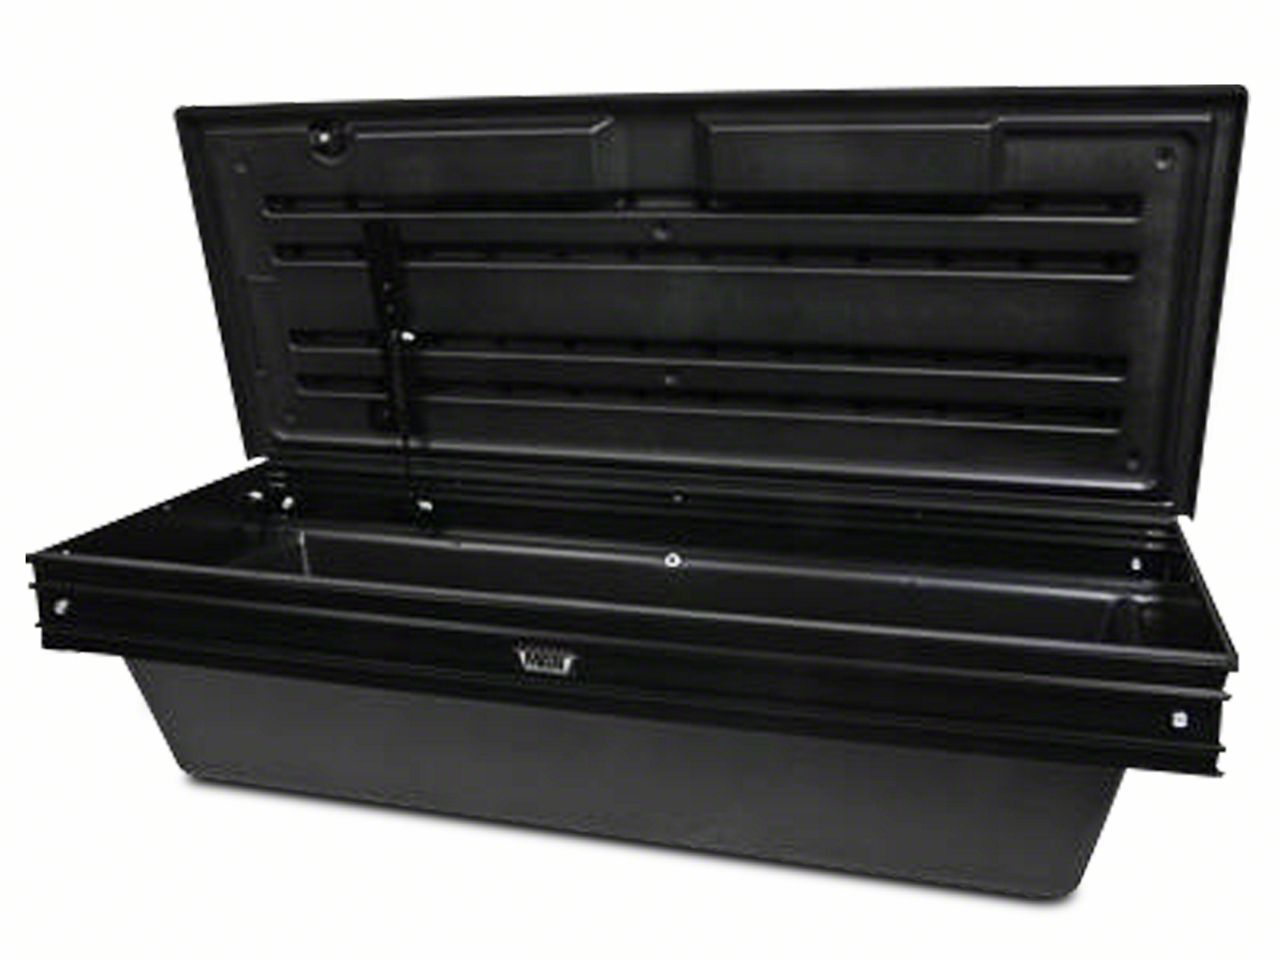 Silverado3500 Tool Boxes & Bed Storage 2015-2019